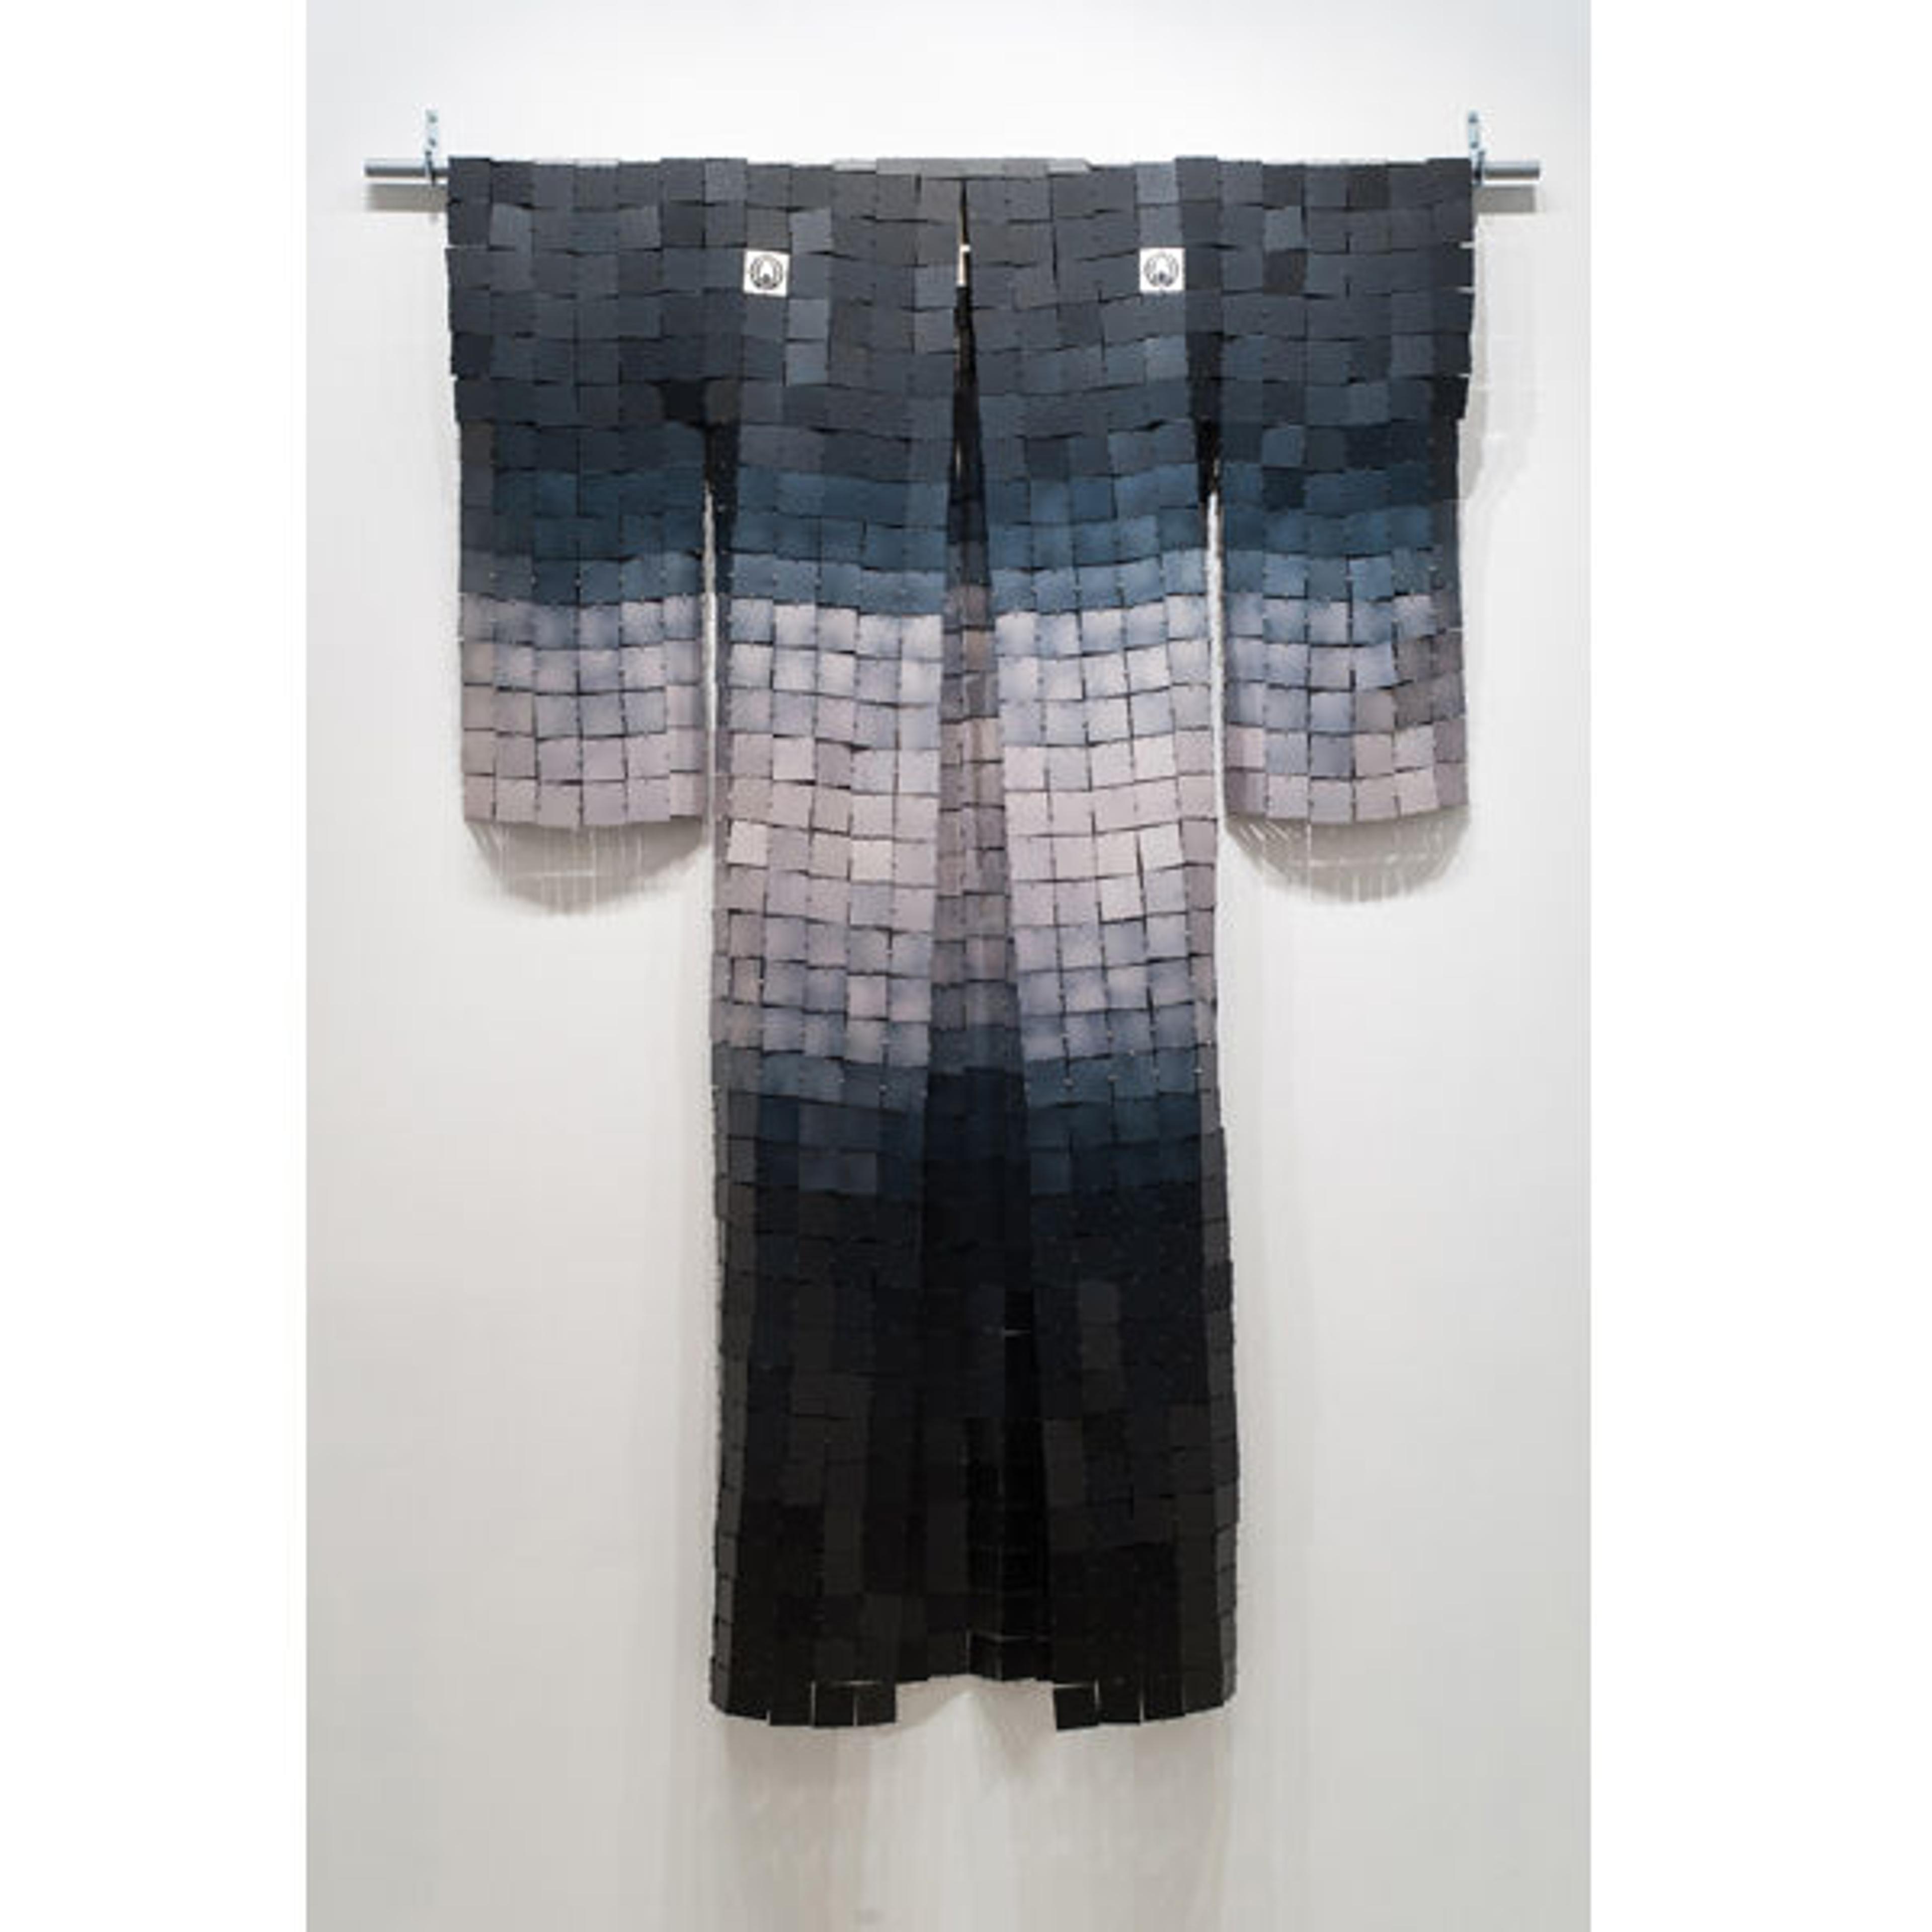 Miya Ando | Black Formal Kimono | Sundaram Tagore Gallery